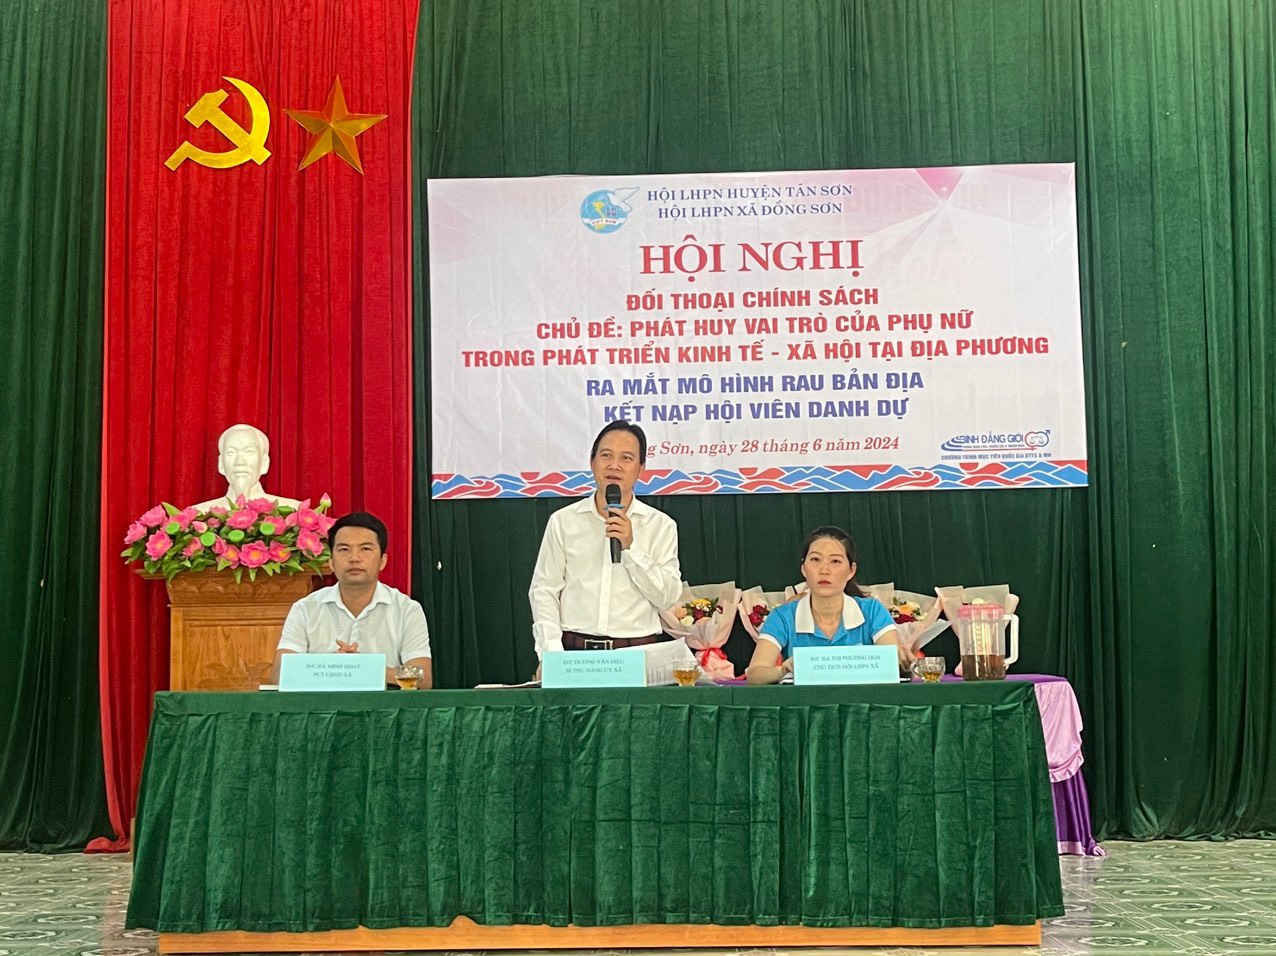 Huyện Tân Sơn: Tổ chức 16 cuộc đối thoại chính sách cấp xã và cụm thôn bản giúp chị em bày tỏ tâm tư, nguyện vọng 